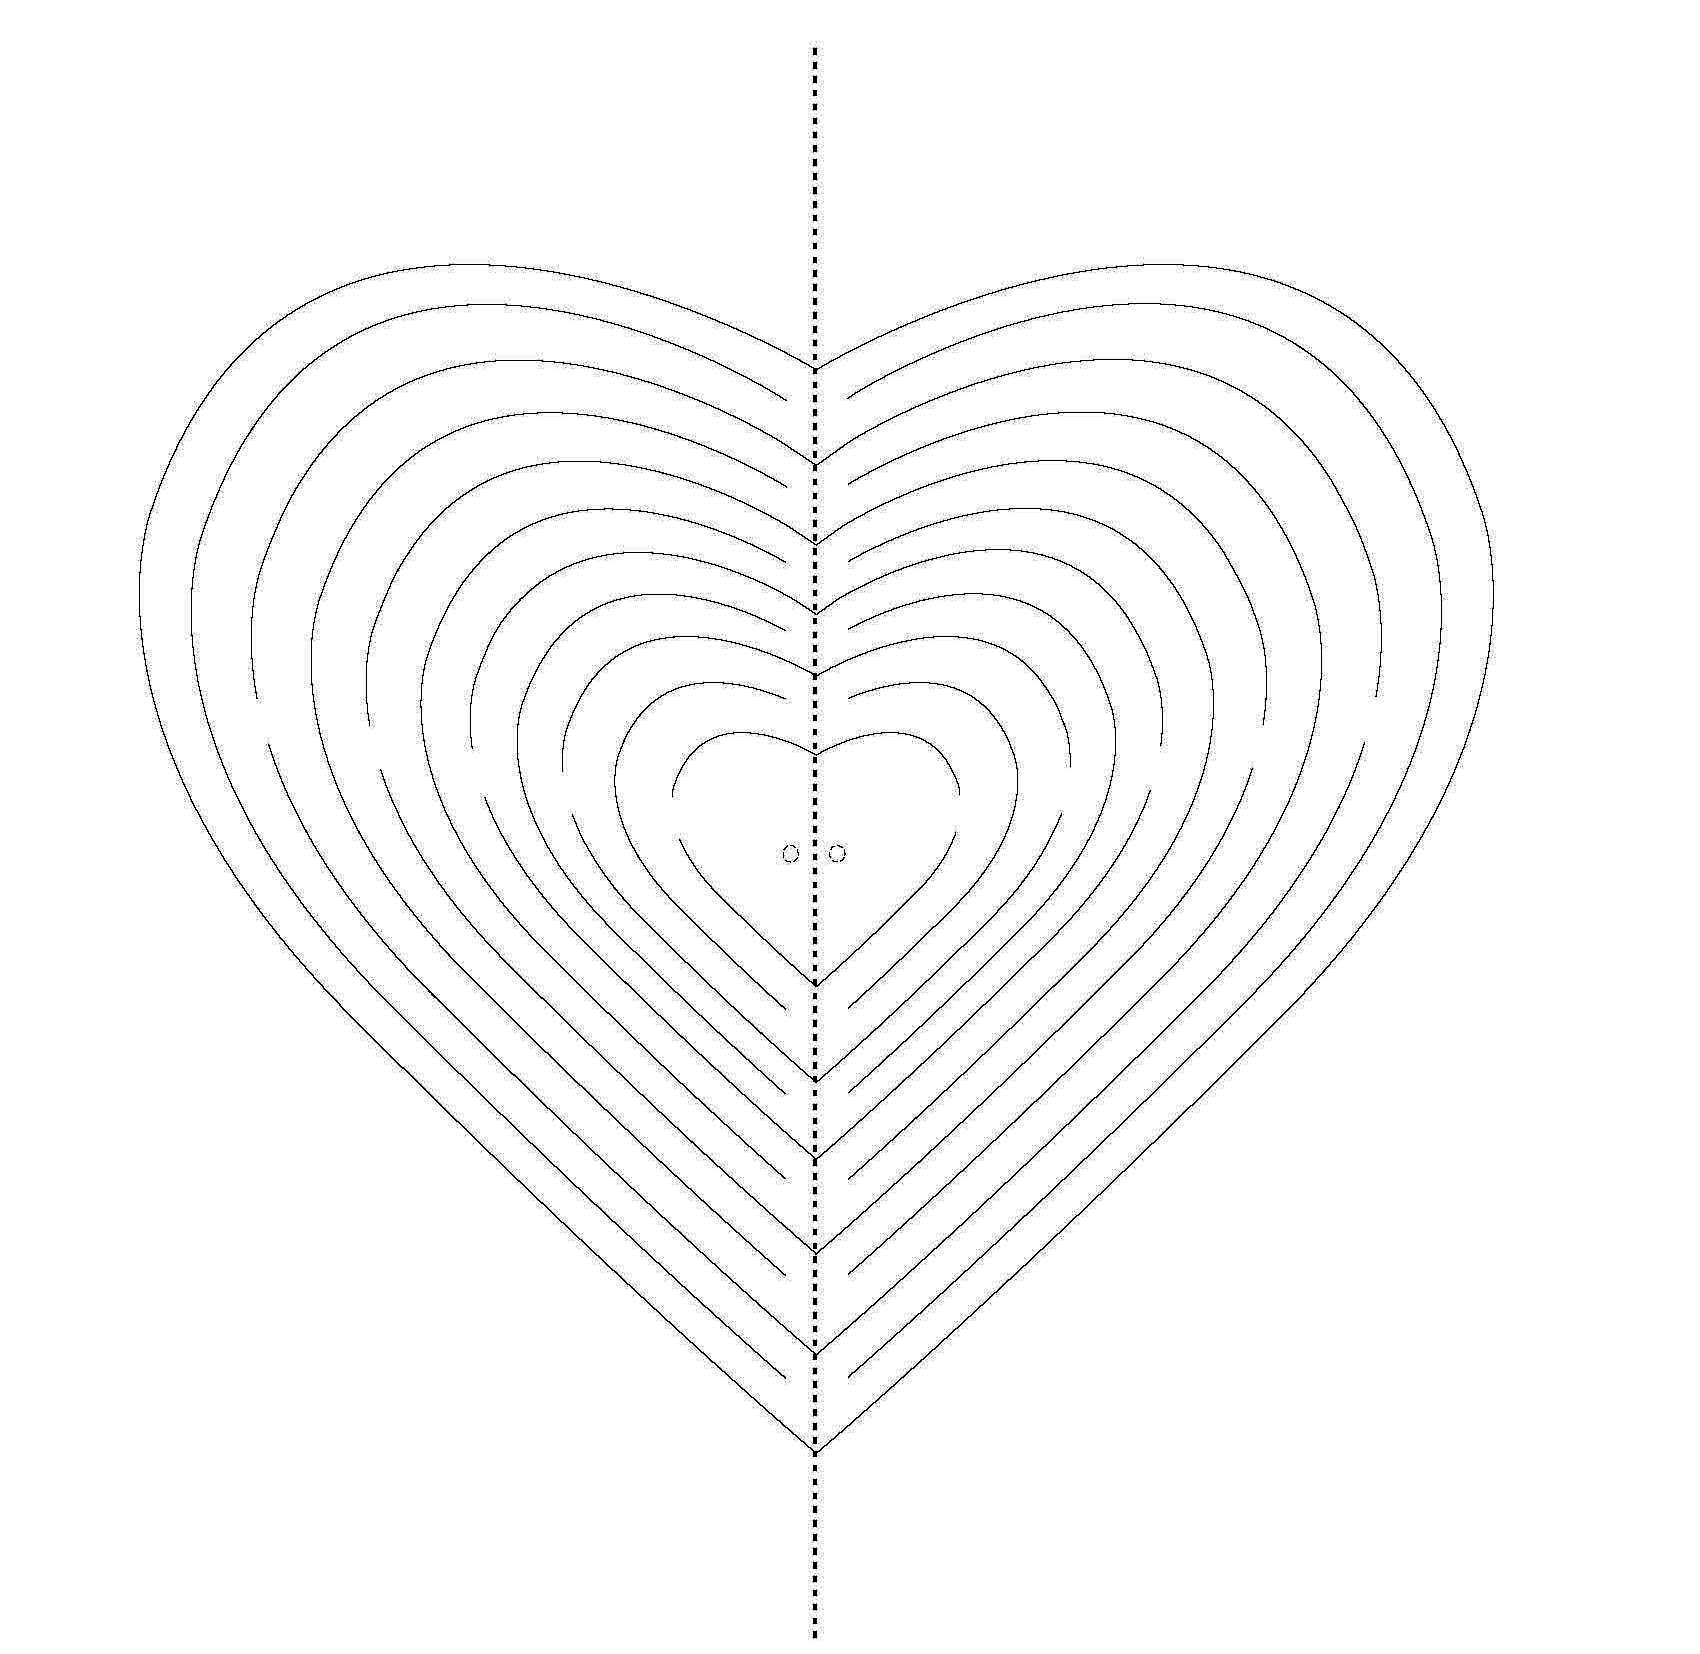 valentýnské přání, 3D srdce, vystřihovánka srdce,valentýncké srdce návod, svatý valentin